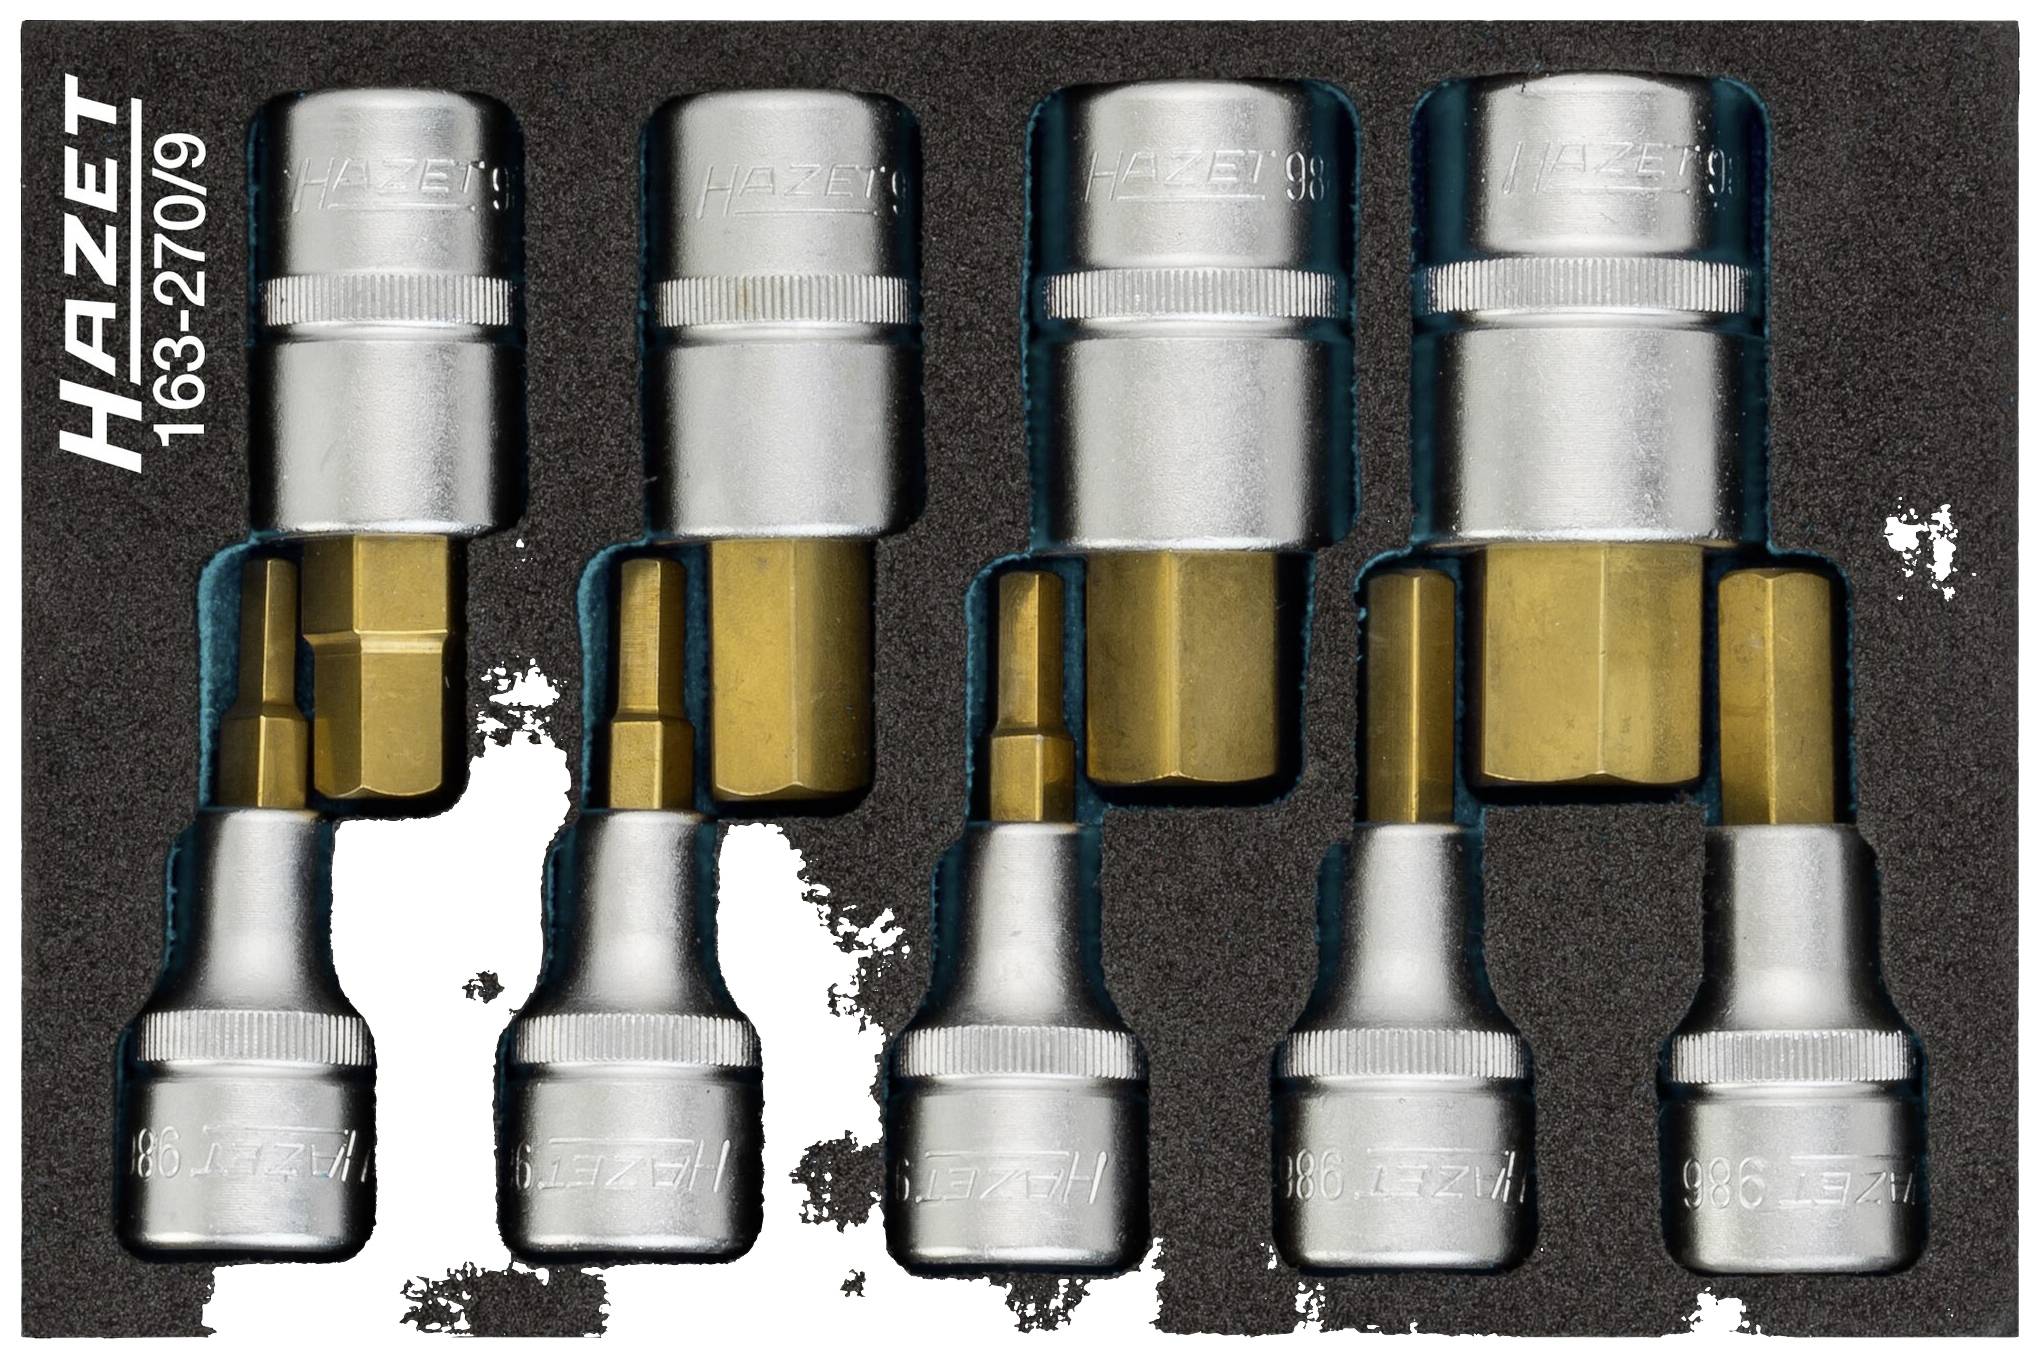 HAZET Werkzeug Module 163-270/9 (163-270/9)